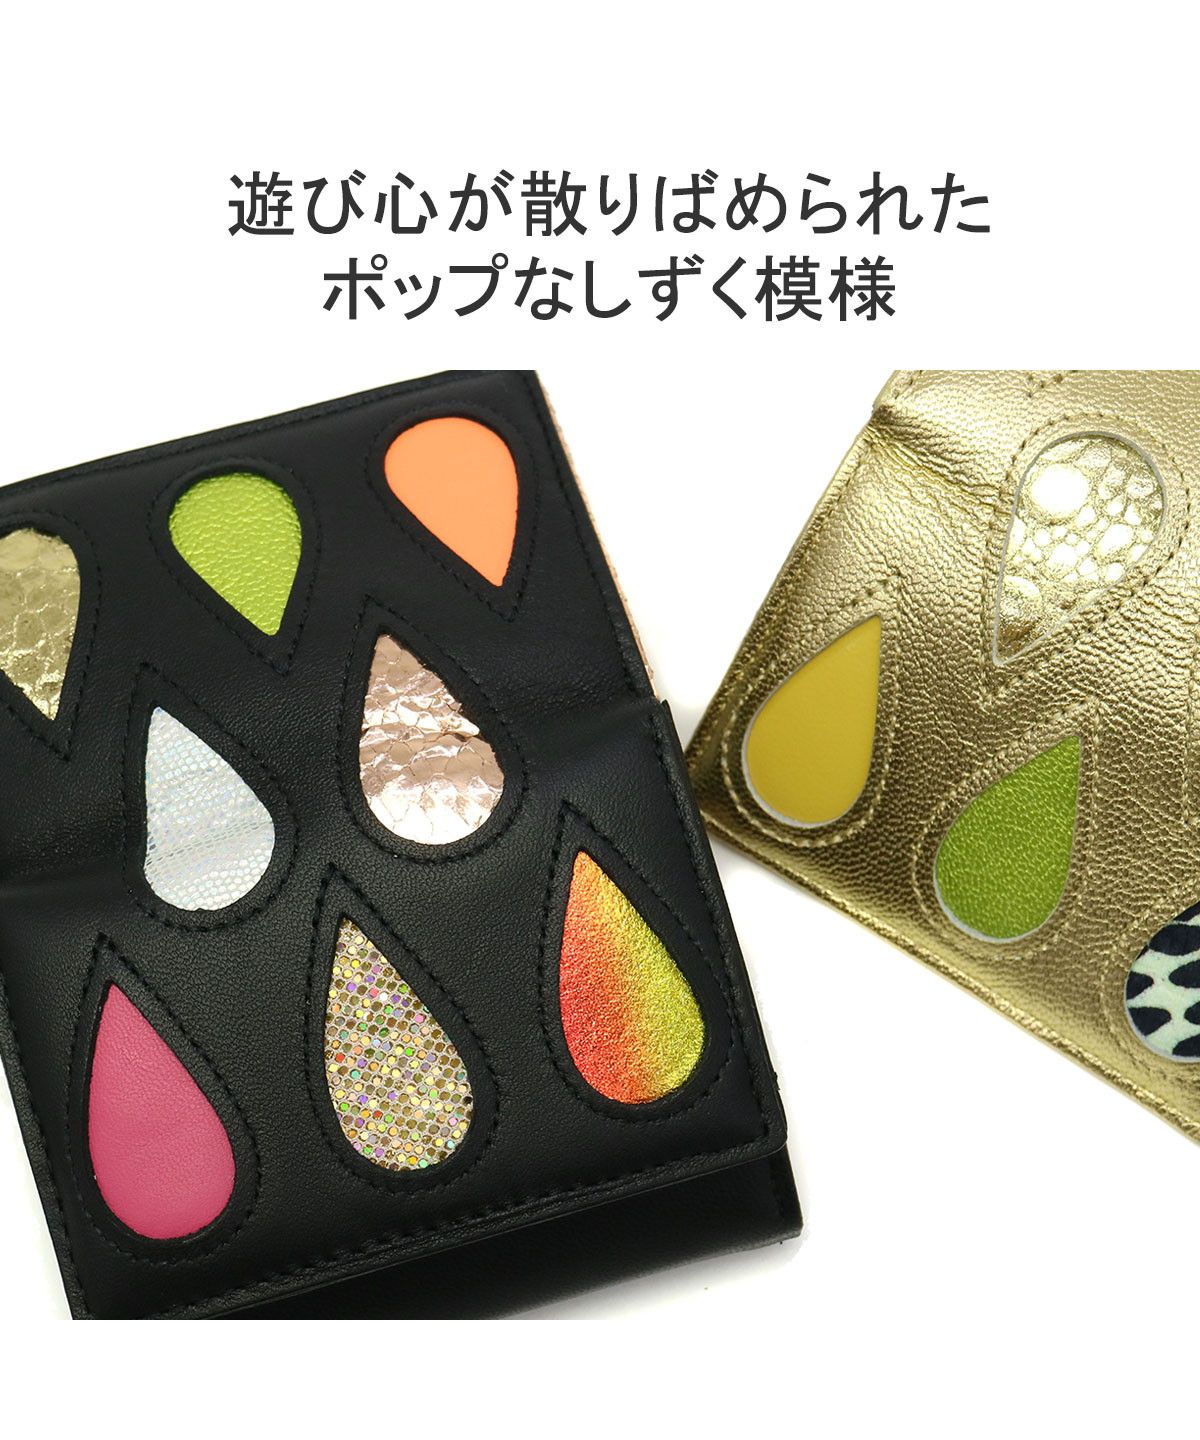 ツモリチサト 財布 tsumori chisato carry 三つ折り財布 ドロップス 